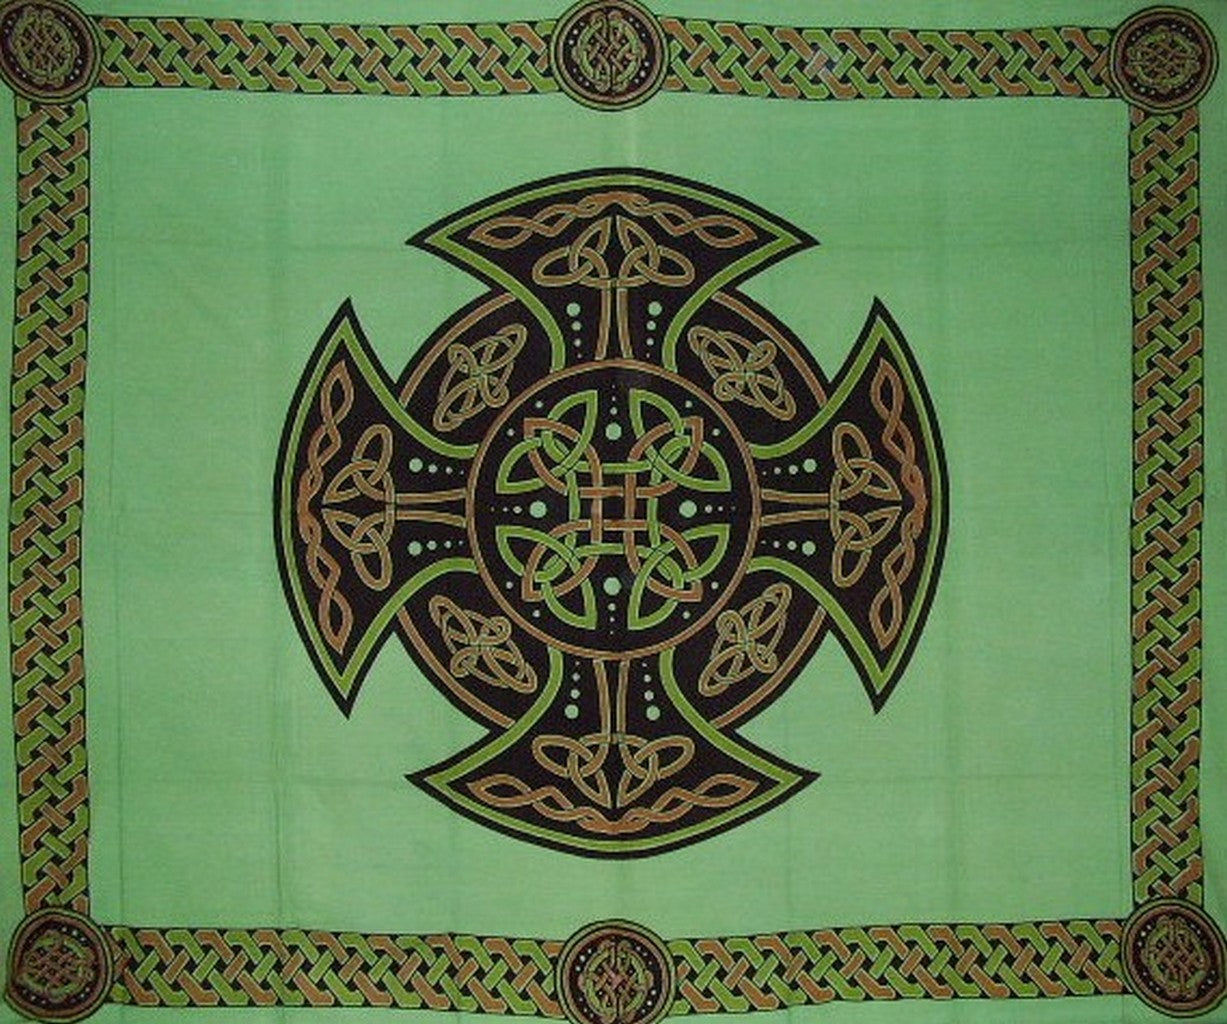 Copriletto in cotone con arazzo a croce celtica 104 "x 88" completamente verde